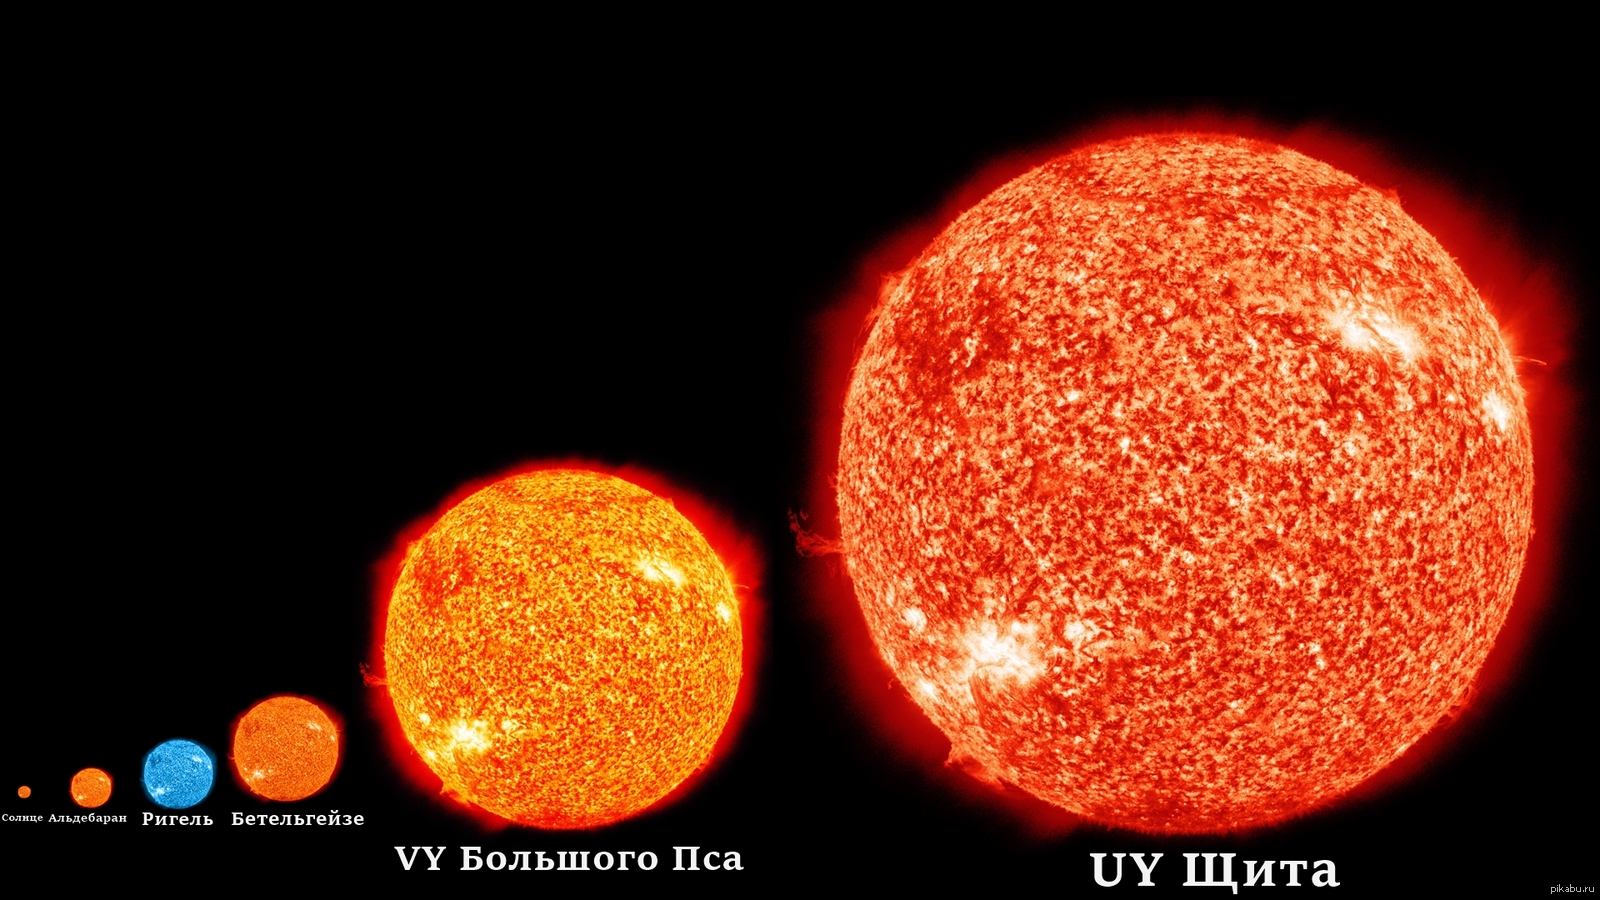 Четыре большие звезды. R136a1 и Бетельгейзе. Uy щита и Бетельгейзе. Альдебаран и Бетельгейзе. Самая большая звезда uy щита.